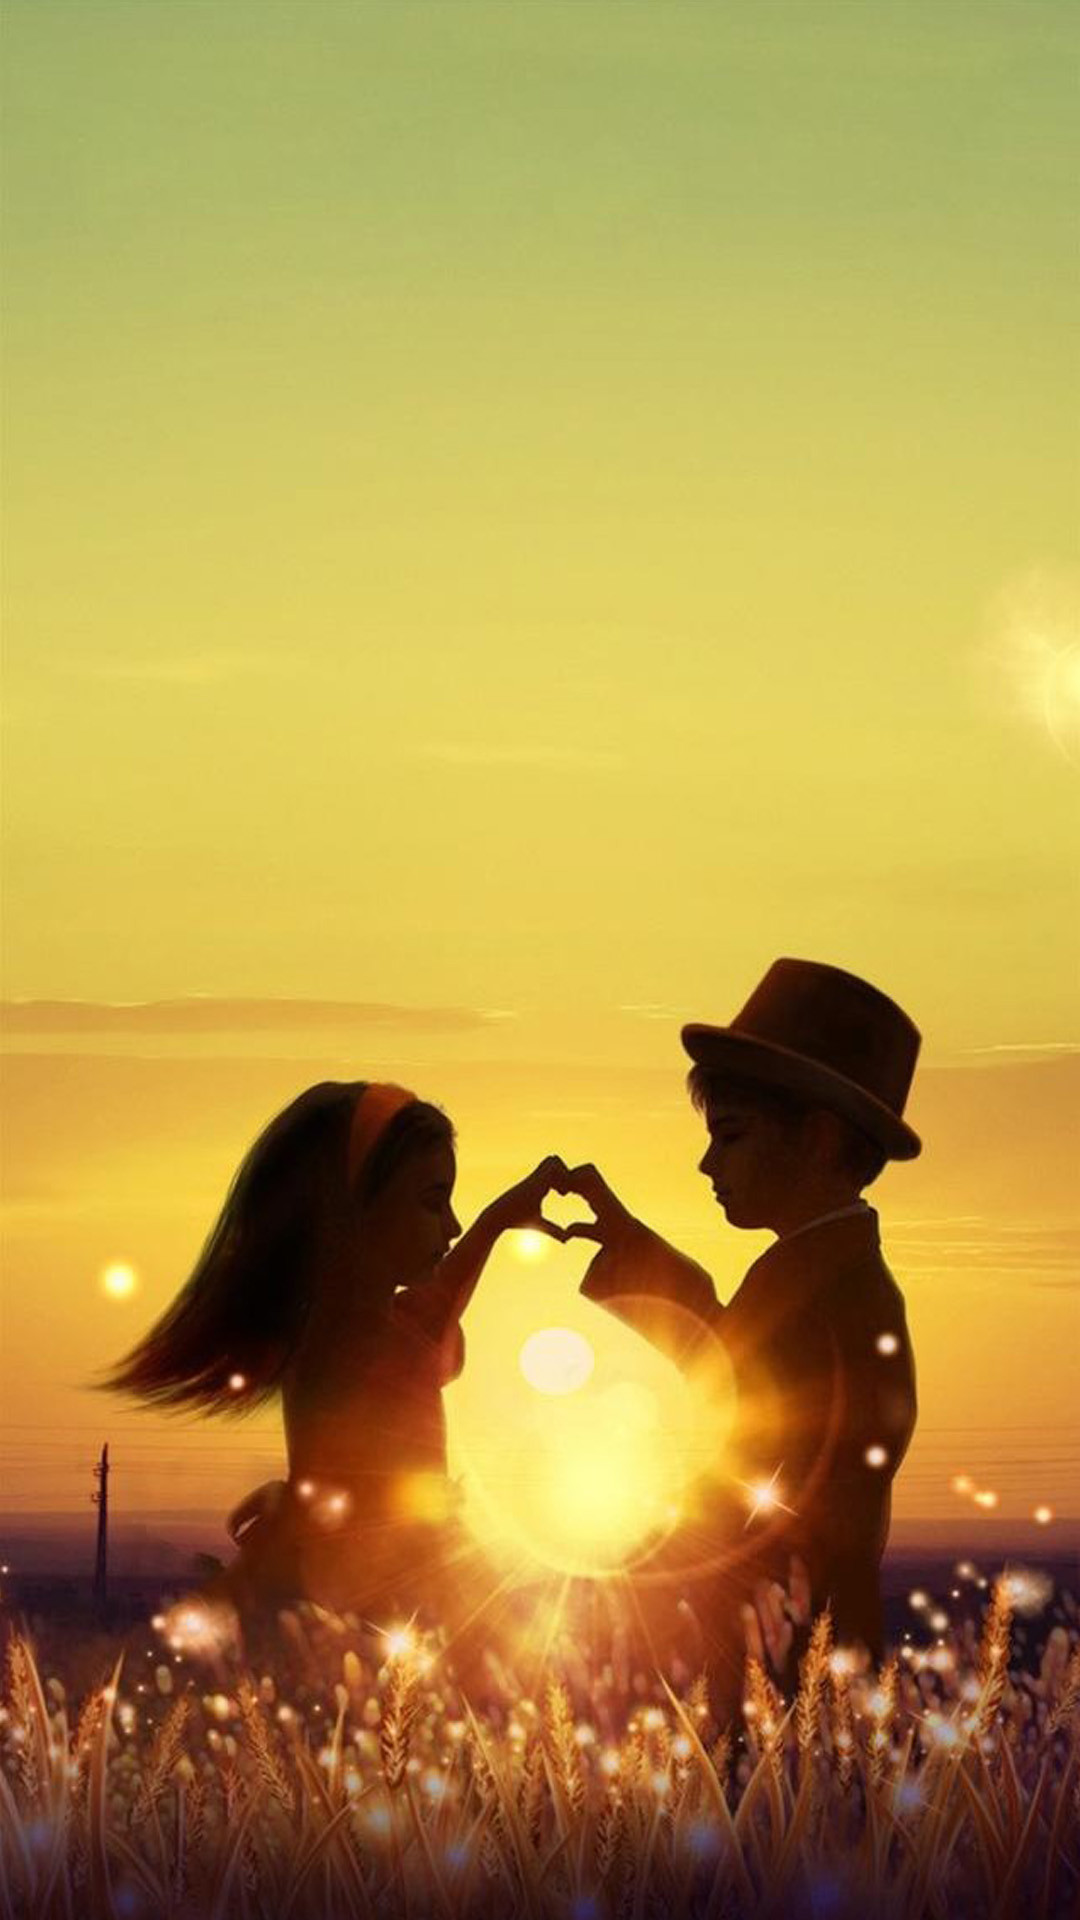 1080x1920 ... Sunset Love Cute Kids Couple Sunlight Flowers Field iPhone 8 wallpaper.